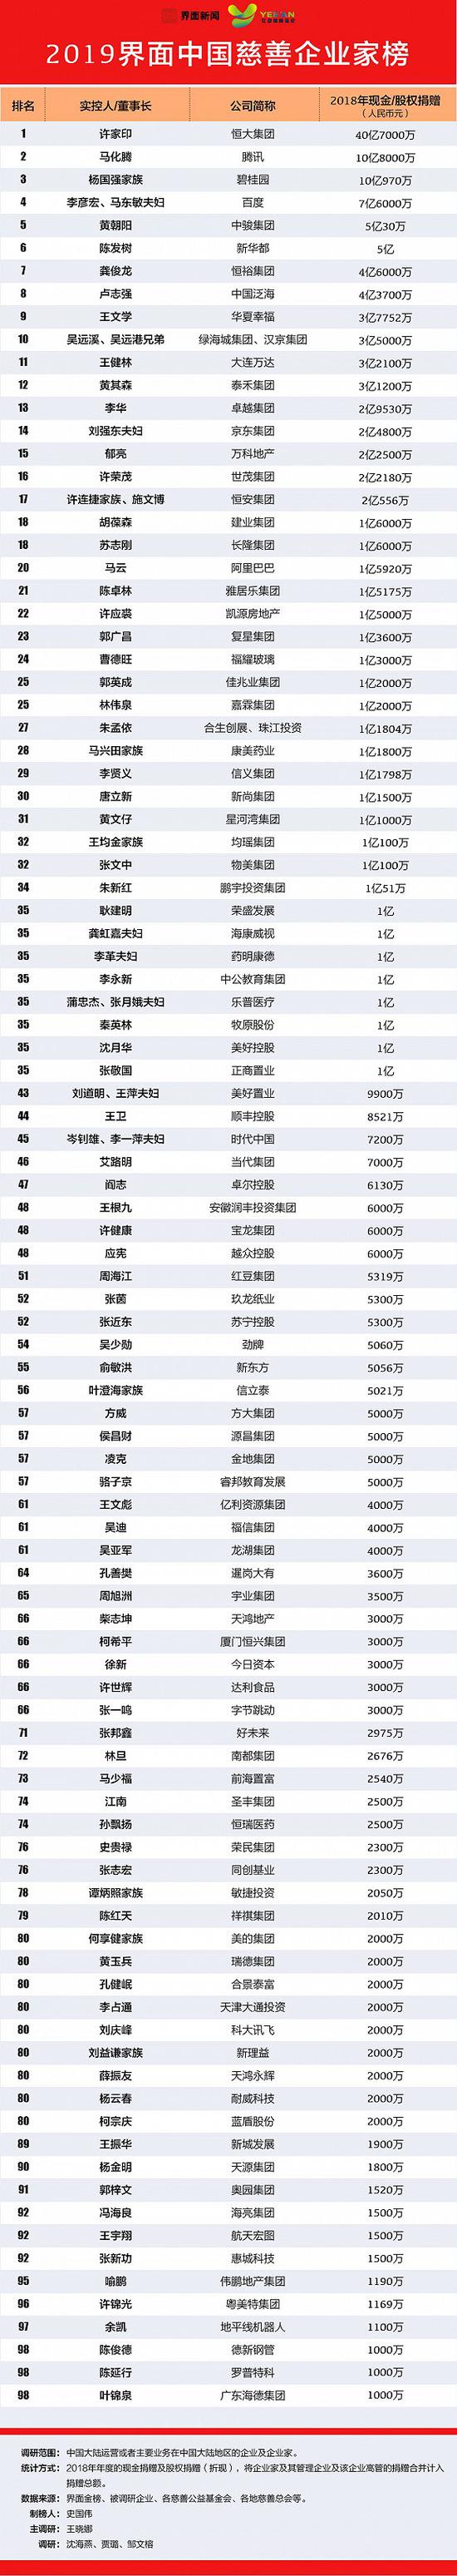 2019中国慈善企业家榜发布 上榜门槛为1000万元